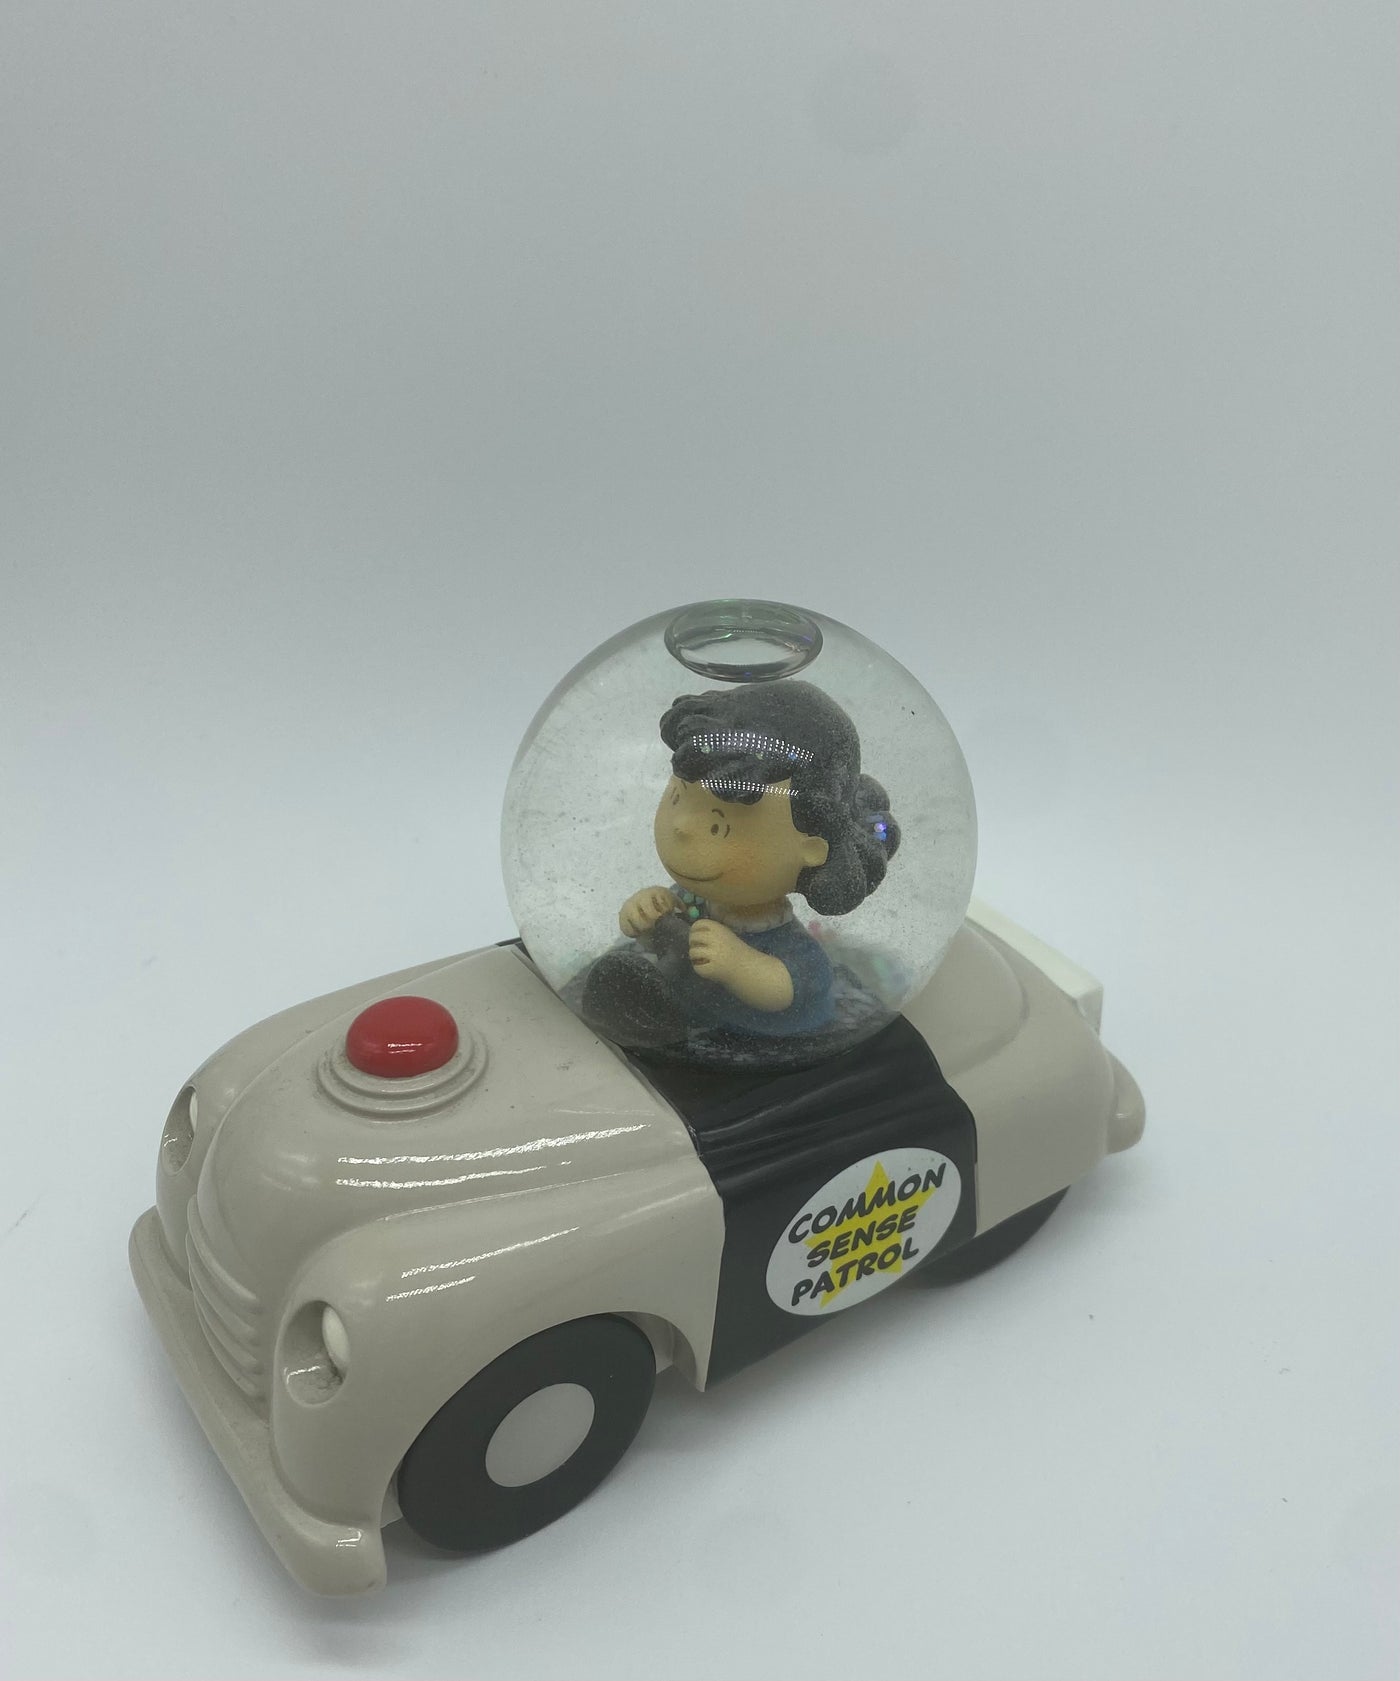 Hallmark Peanuts 2013 Lucy Common Sense Patrol Mini Water Globe Rare New